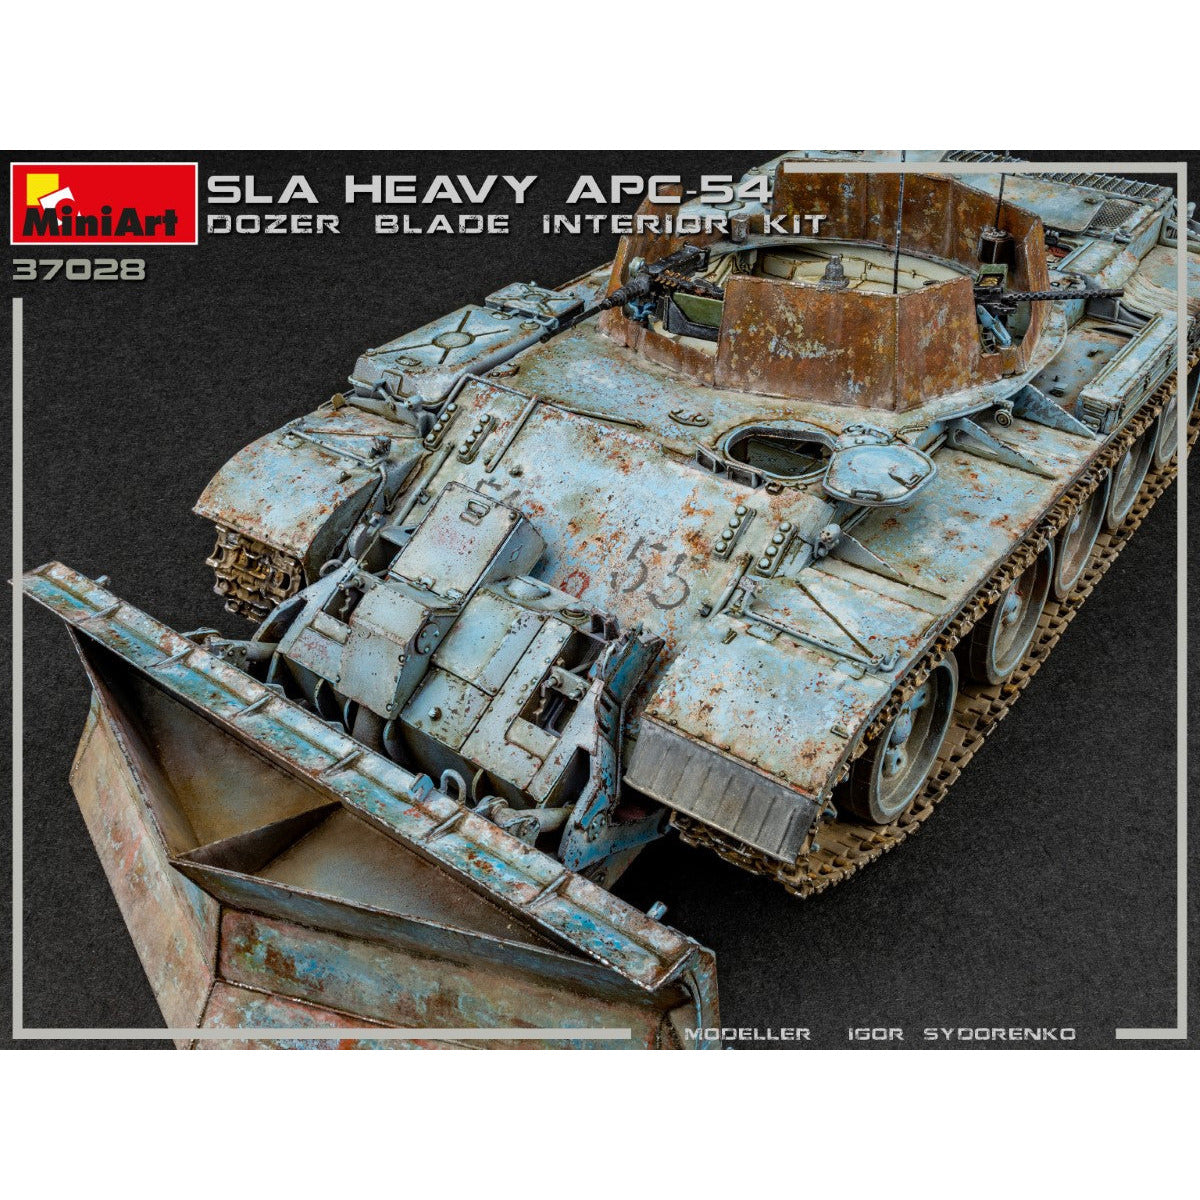 MINIART 1/35 SLA APC T-54 with Dozer Blade Interior Kit